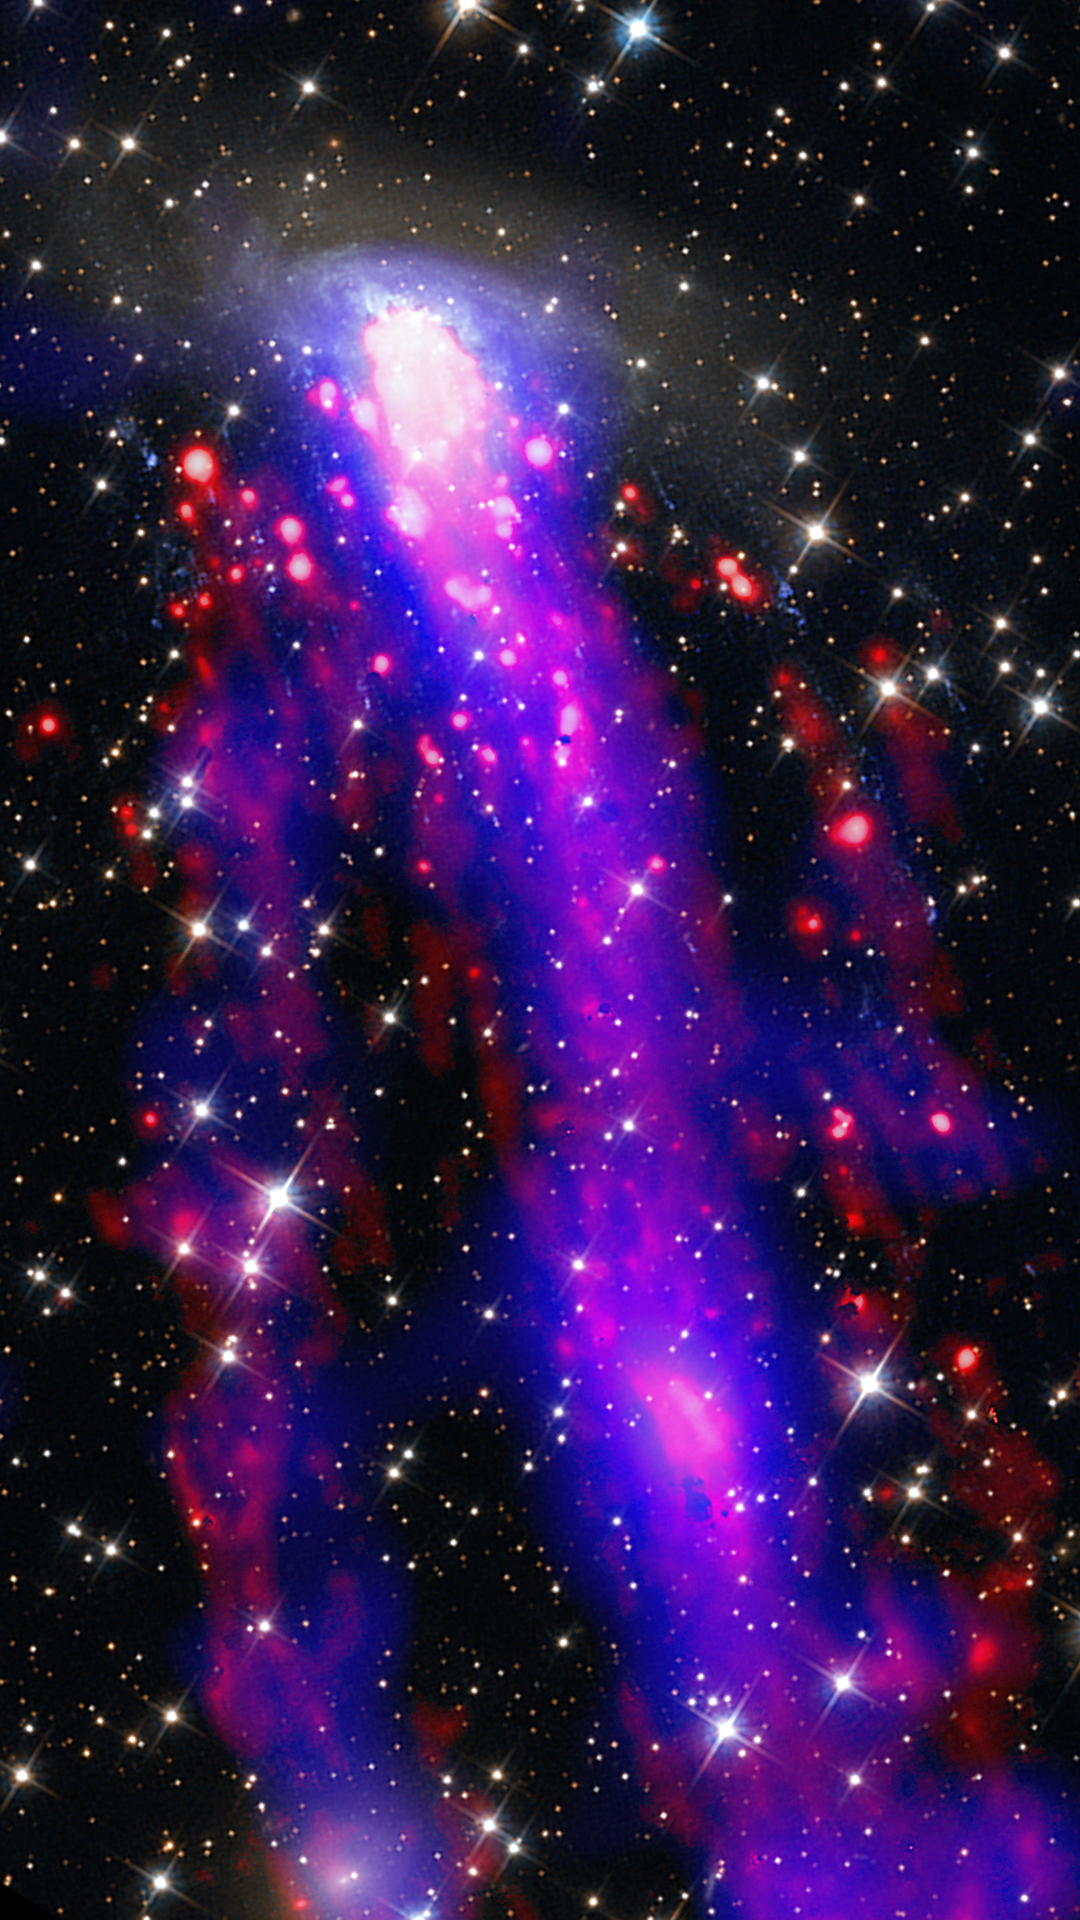 ESO137-001